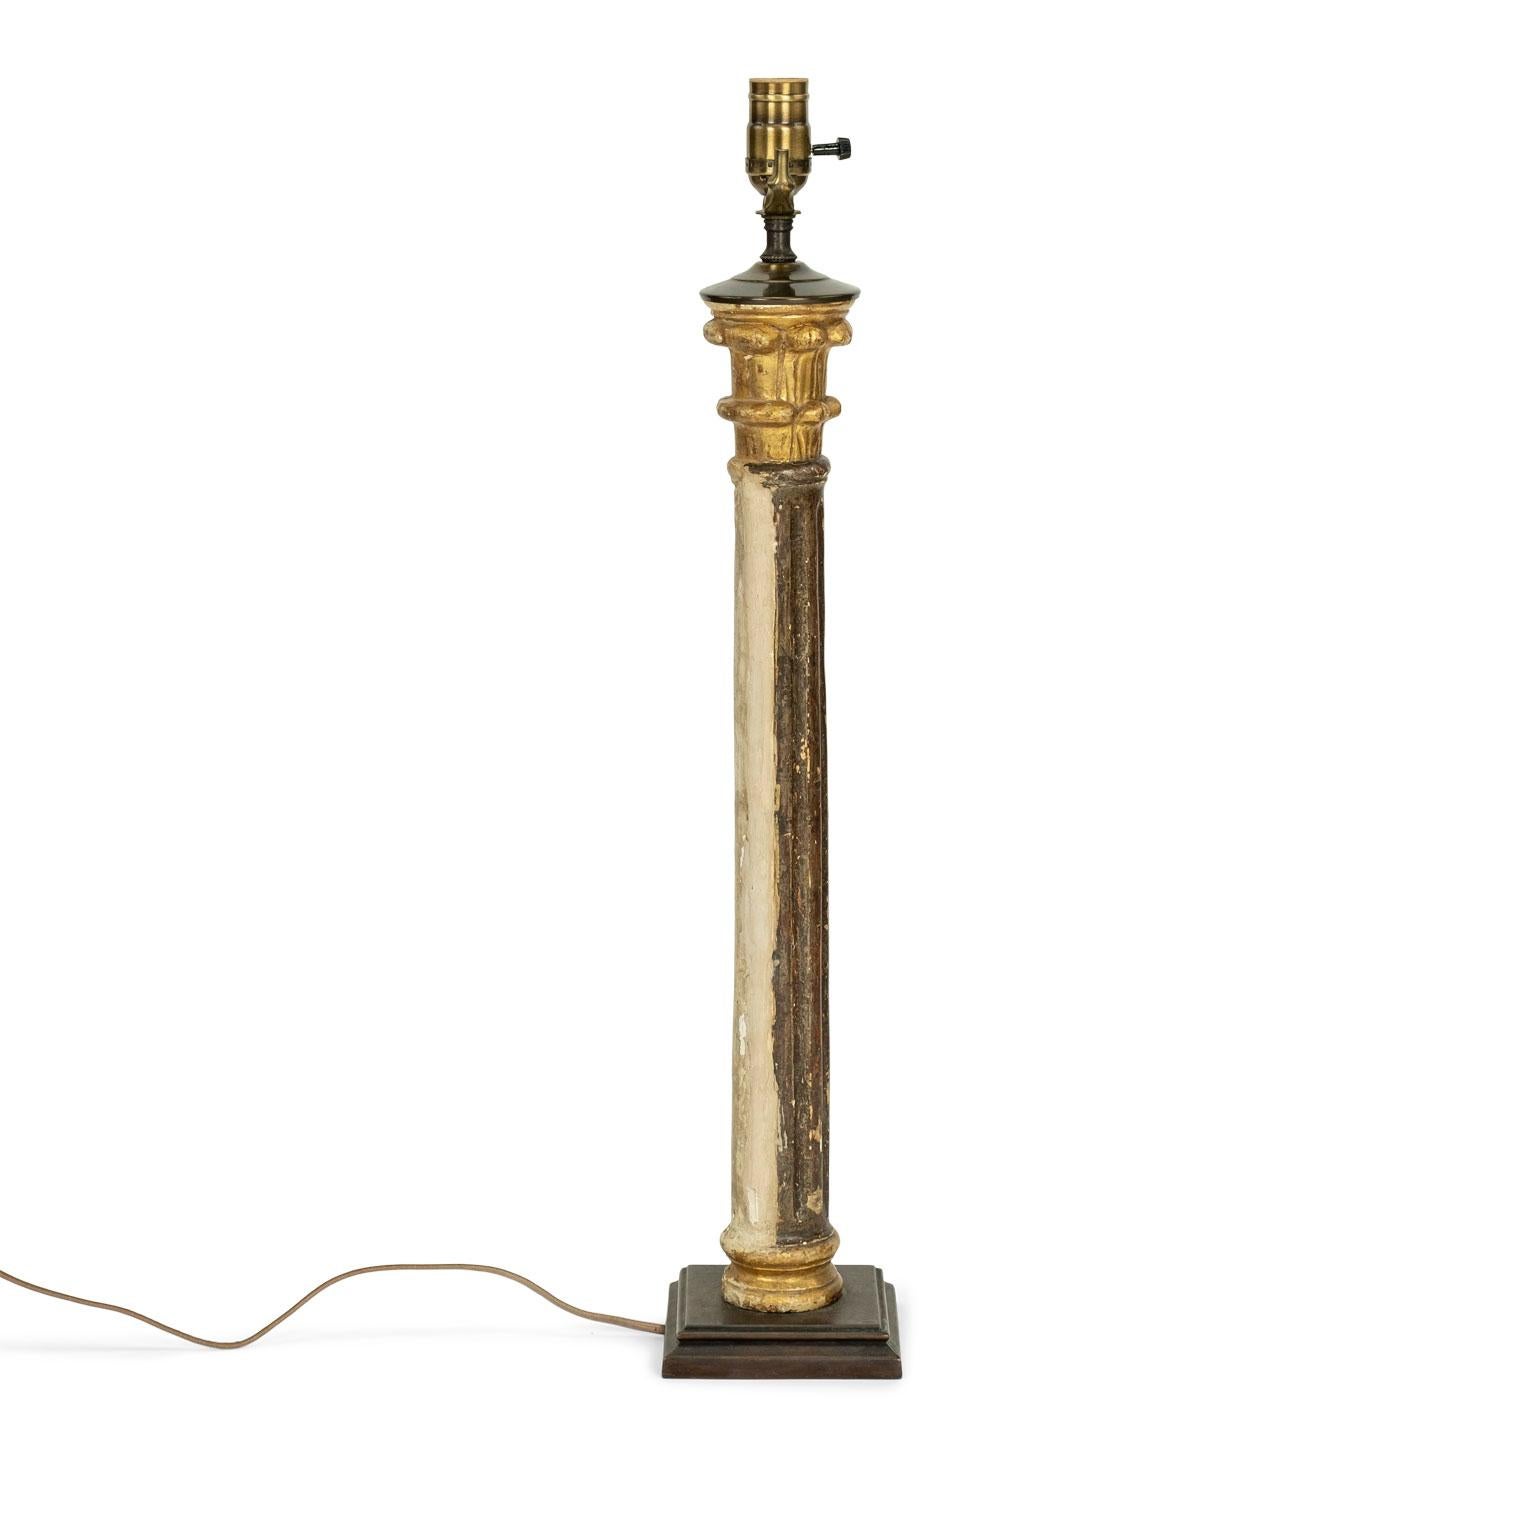 Tischlampe aus Goldholz: handgeschnitzte Goldholzsäule aus dem frühen 19. Jahrhundert, neu verkabelt als Tischlampe. Verkabelt für den Einsatz innerhalb der USA. Verkauft ohne Schirm.

Hinweis: Die ursprüngliche/frühe Oberfläche von antikem und